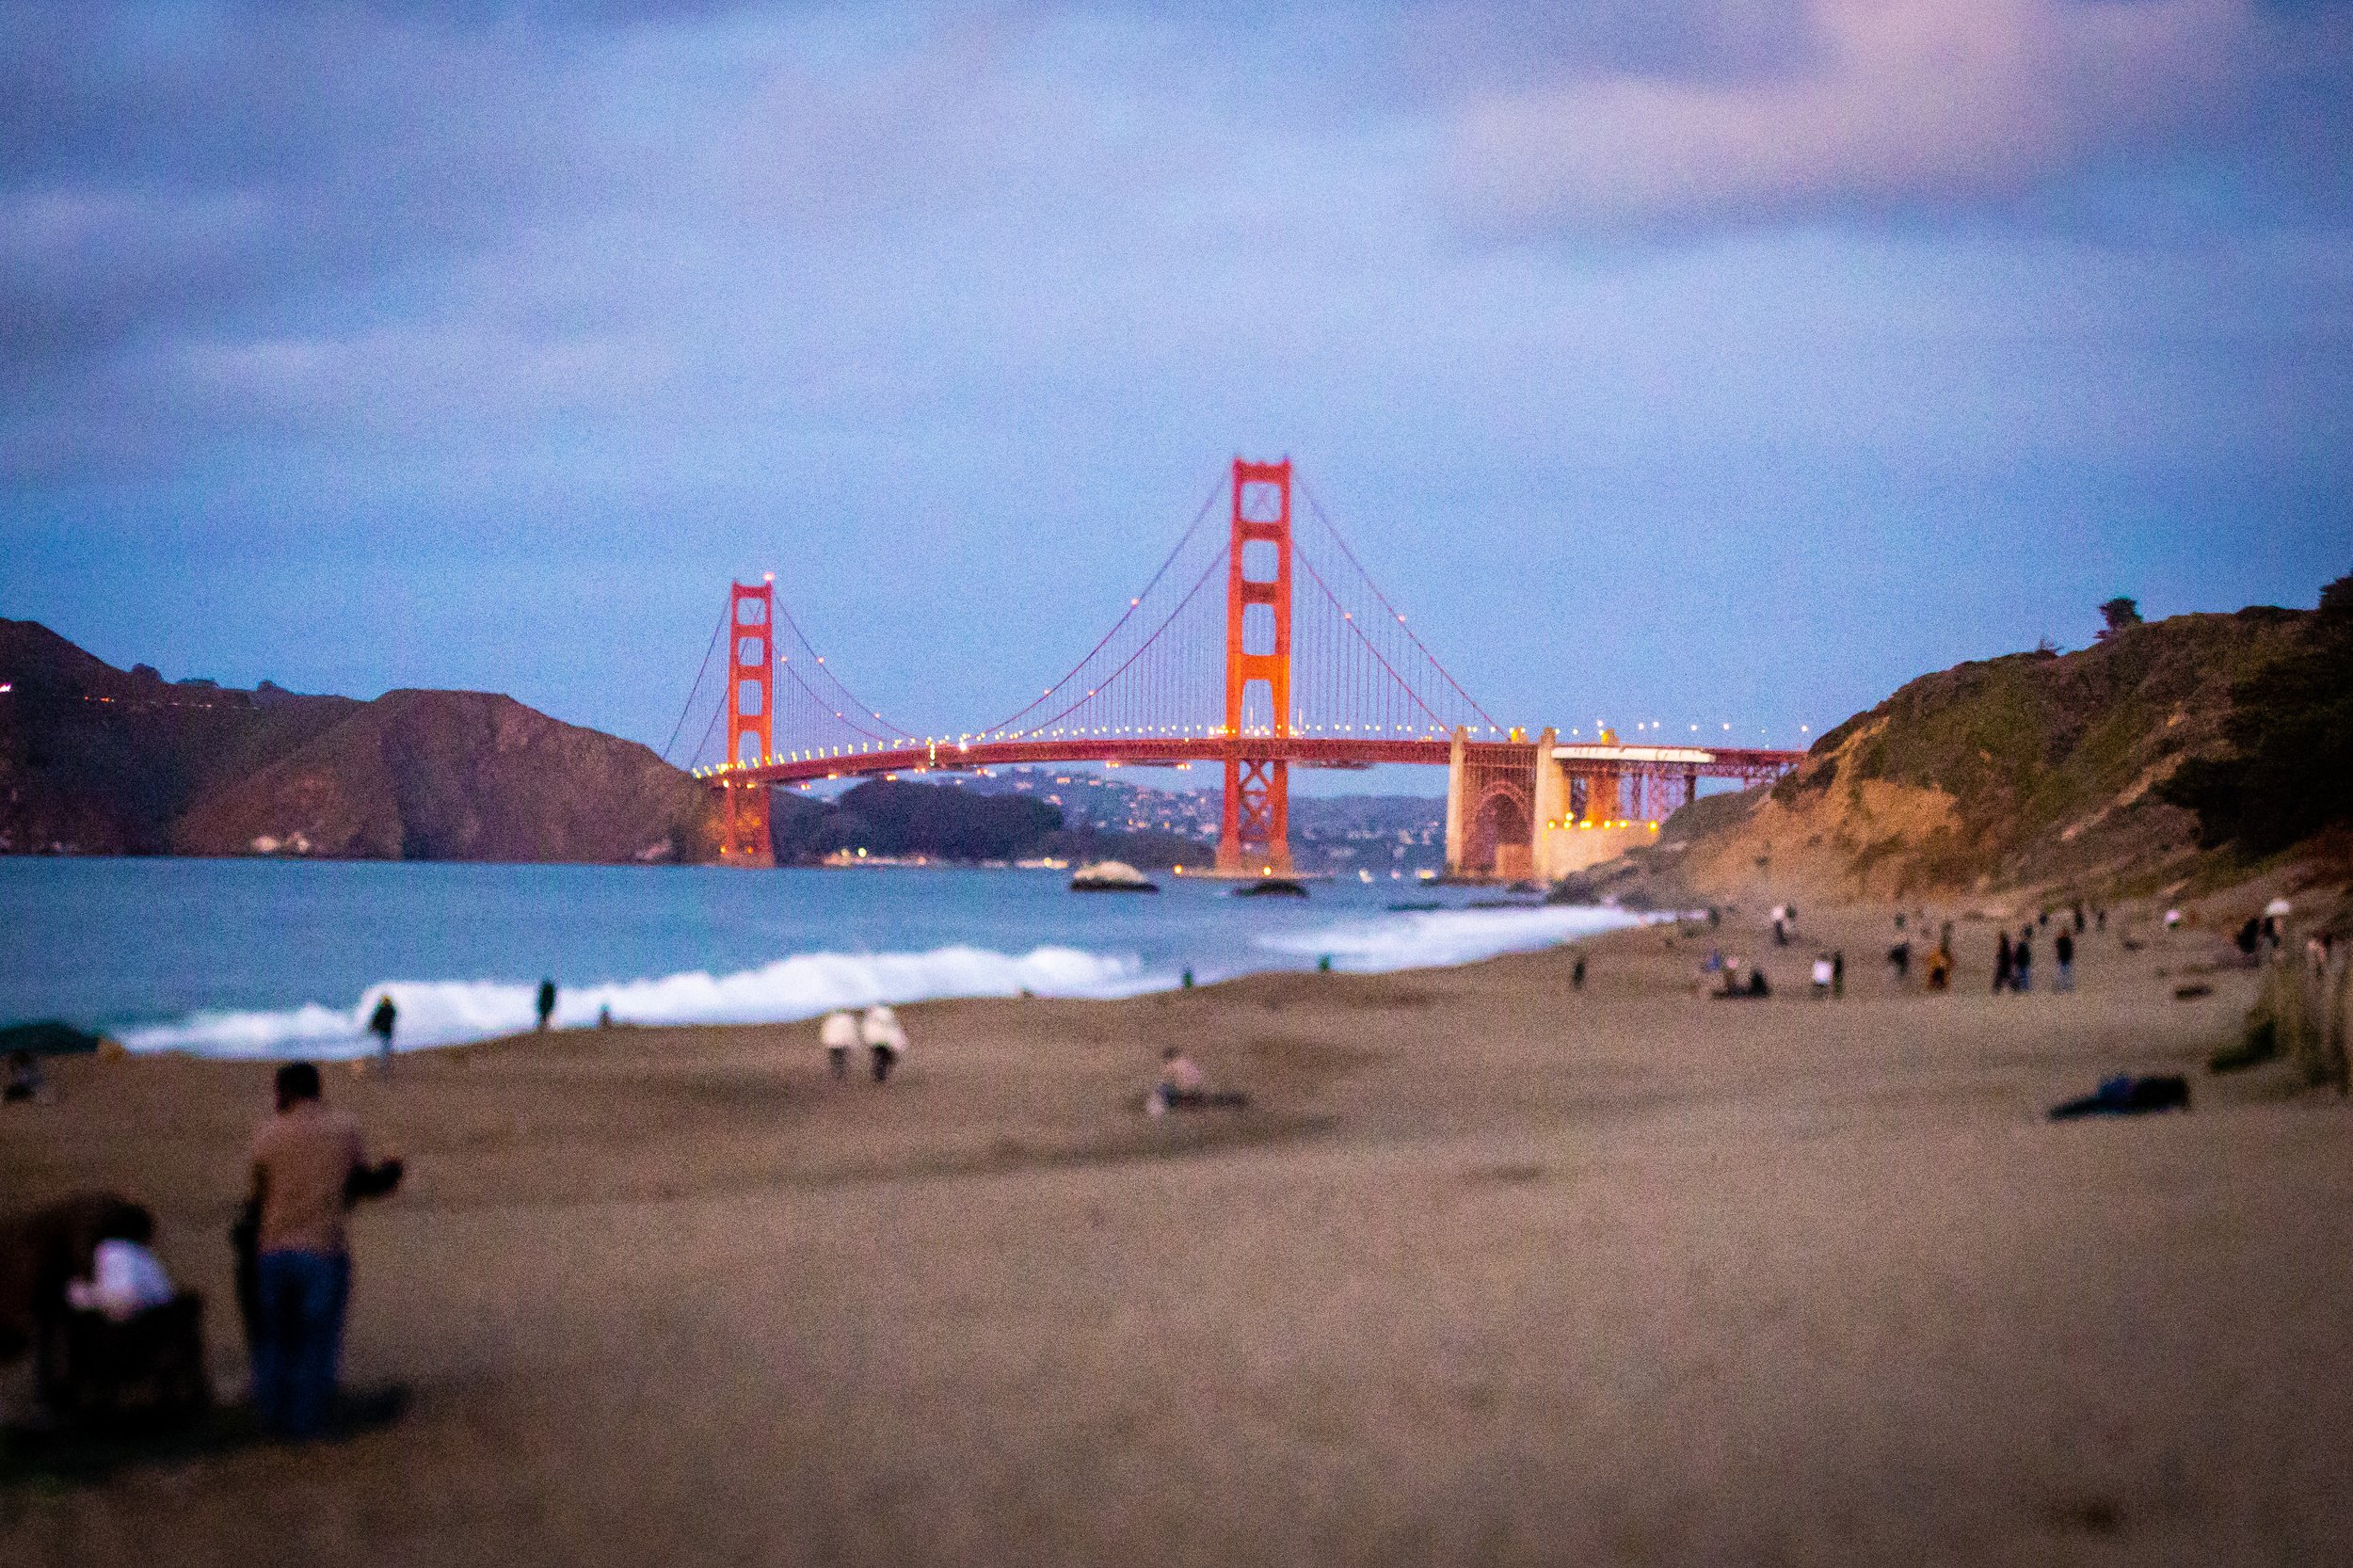 Golden Gate Bridge through tilt-shift lens